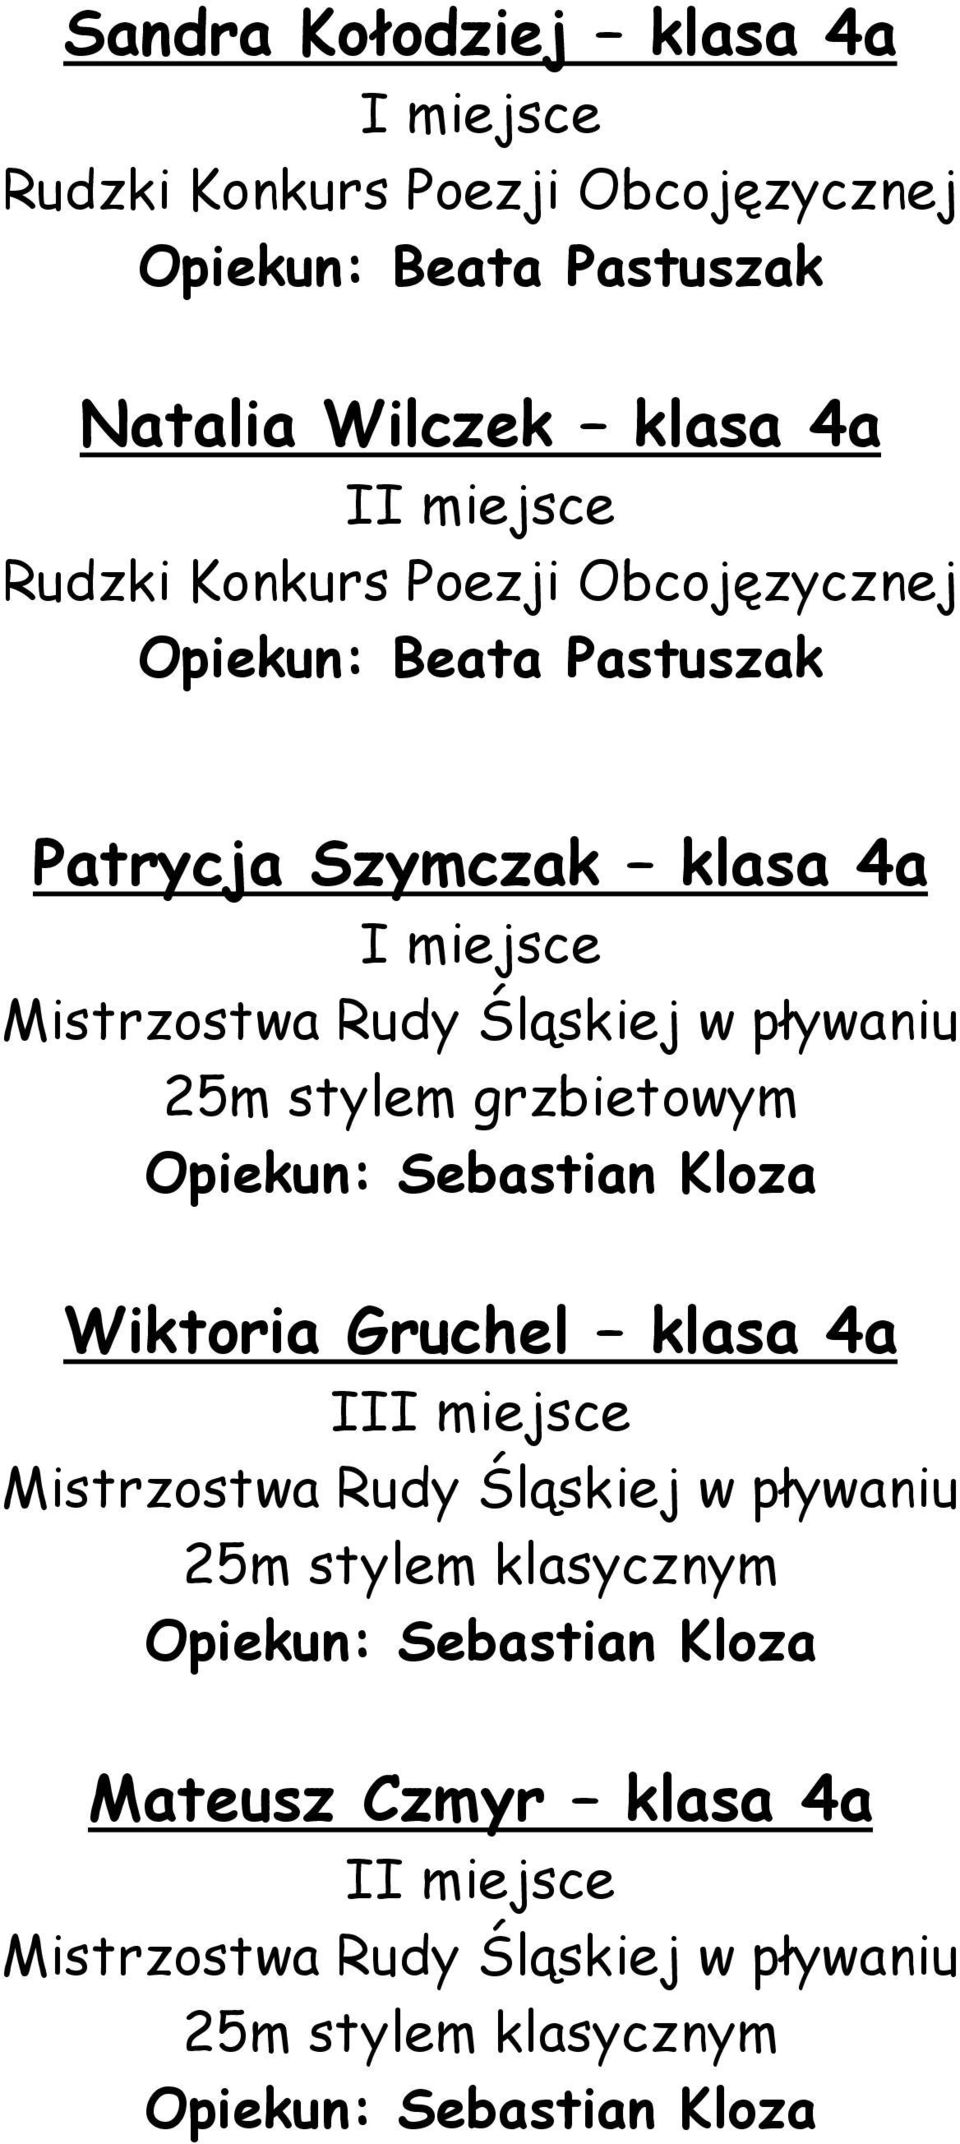 stylem grzbietowym Opiekun: Sebastian Kloza Wiktoria Gruchel klasa 4a I Mistrzostwa Rudy Śląskiej w pływaniu 25m stylem